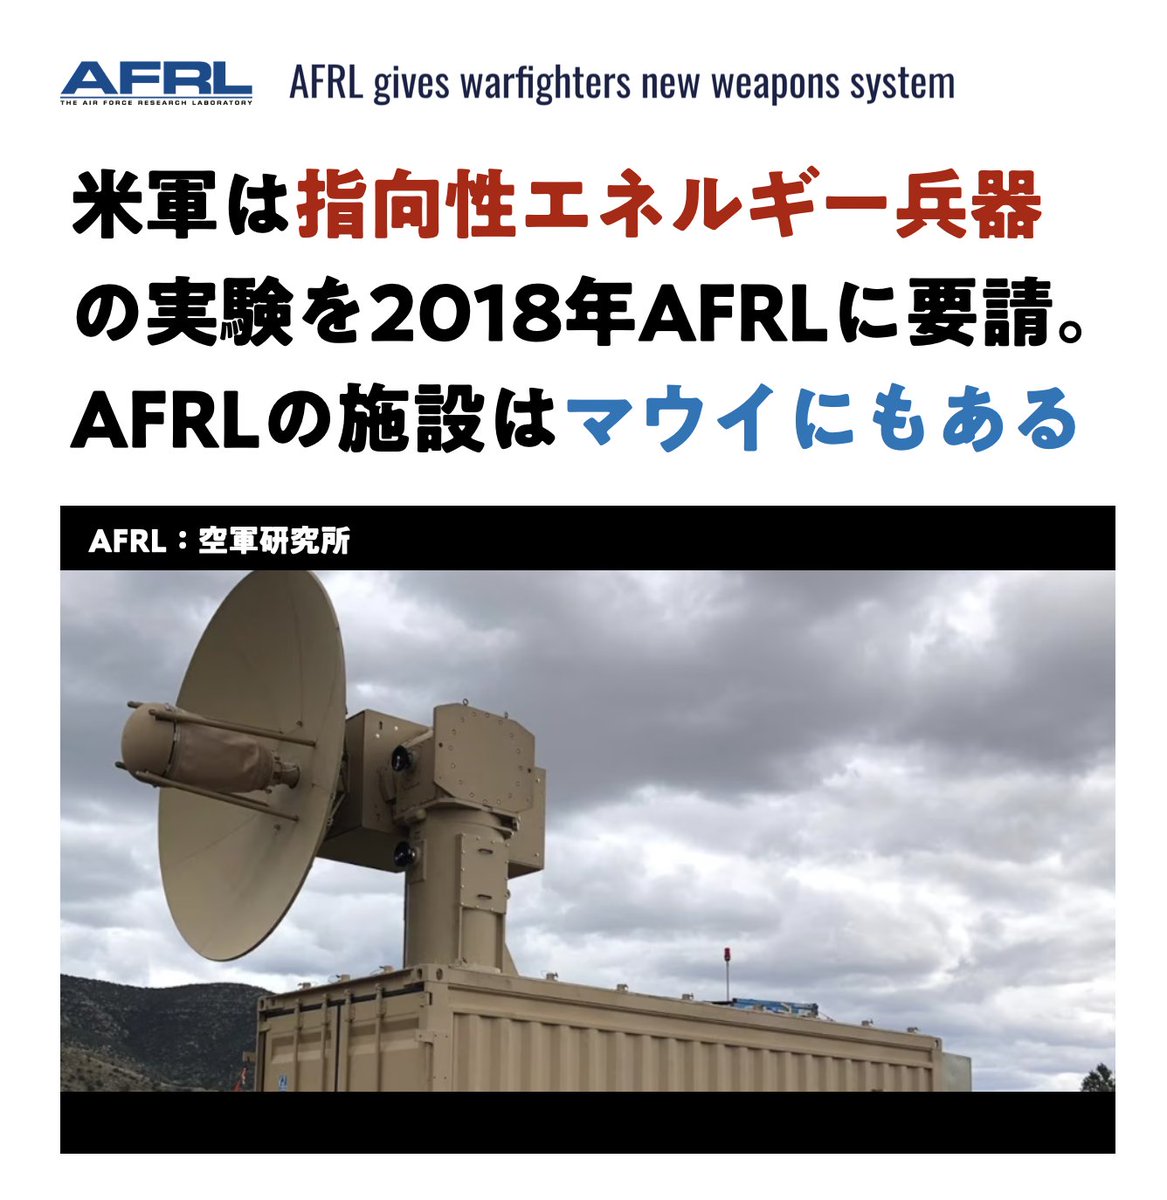 マウイと米軍と
指向性エネルギー。
.
2020年の記事：2018年1月、スティーブン・ウィルソン空軍副参謀長が「指向性エネルギーシステム」の実験（レーザーと高出力マイクロ波で敵機を迎撃）をAFRLに要請した。※AFRLの施設はマウイのハレアカラ山頂にある🤔
robins.af.mil/News/Article-D…